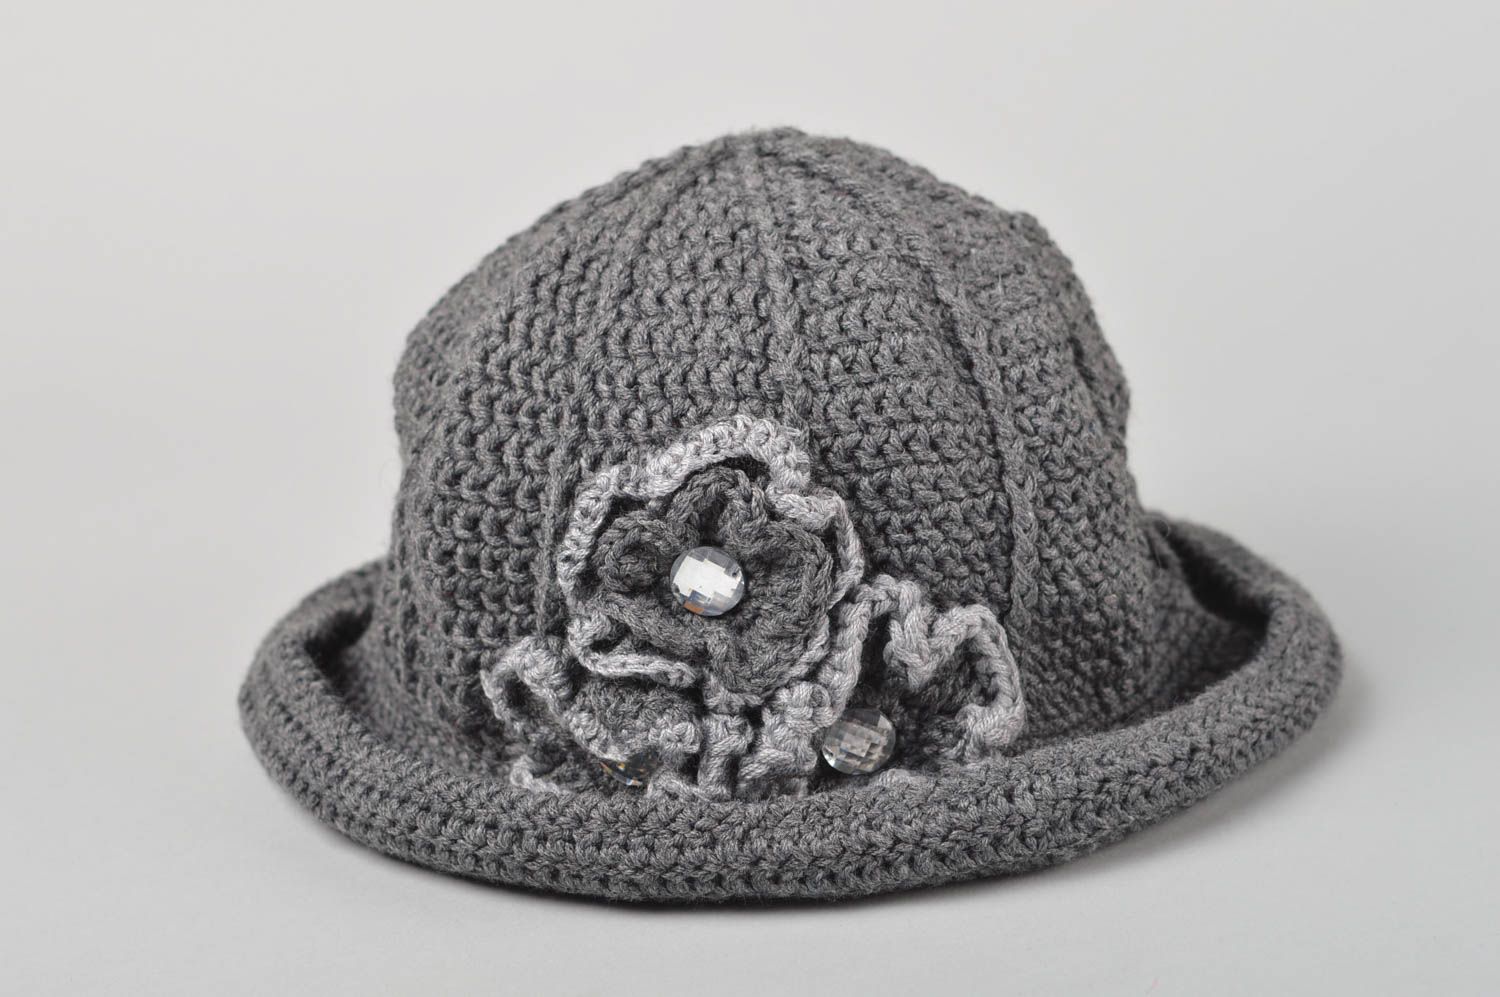 Handmade hat crocheted hat designer hat for women beaded hat gift ideas photo 2